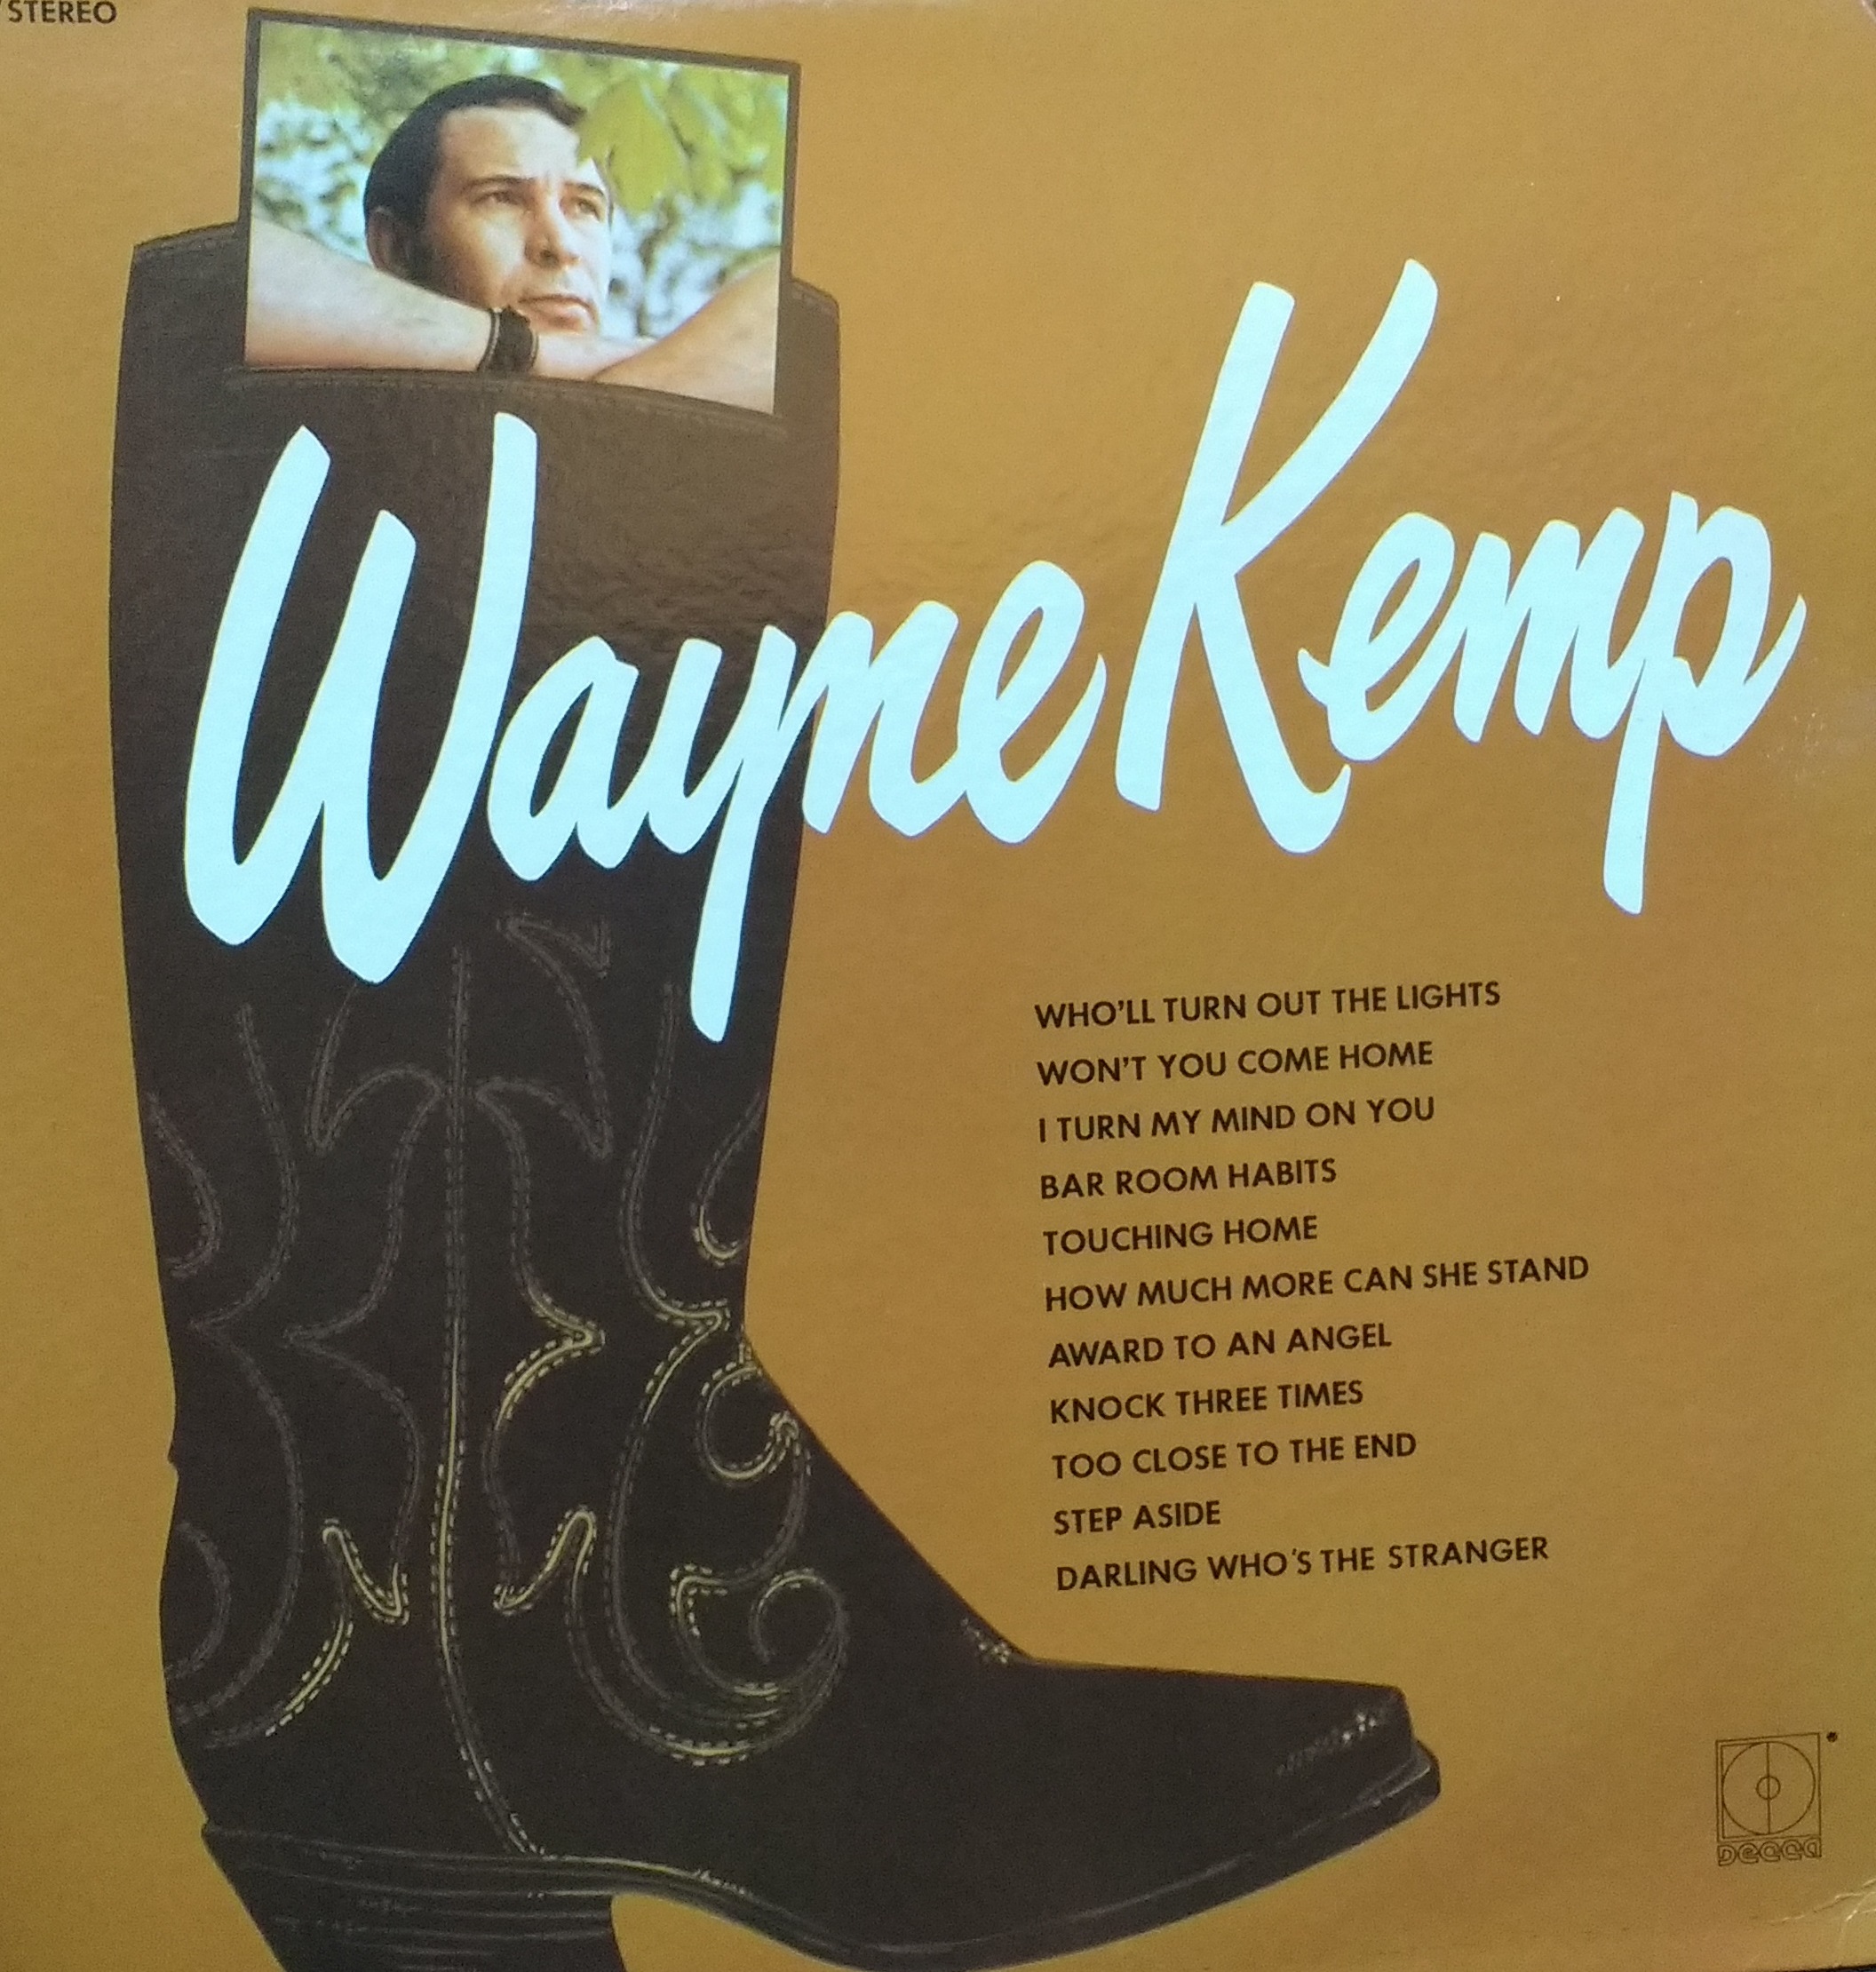 Wayne Kemp - Wayne Kemp (Self Titled)